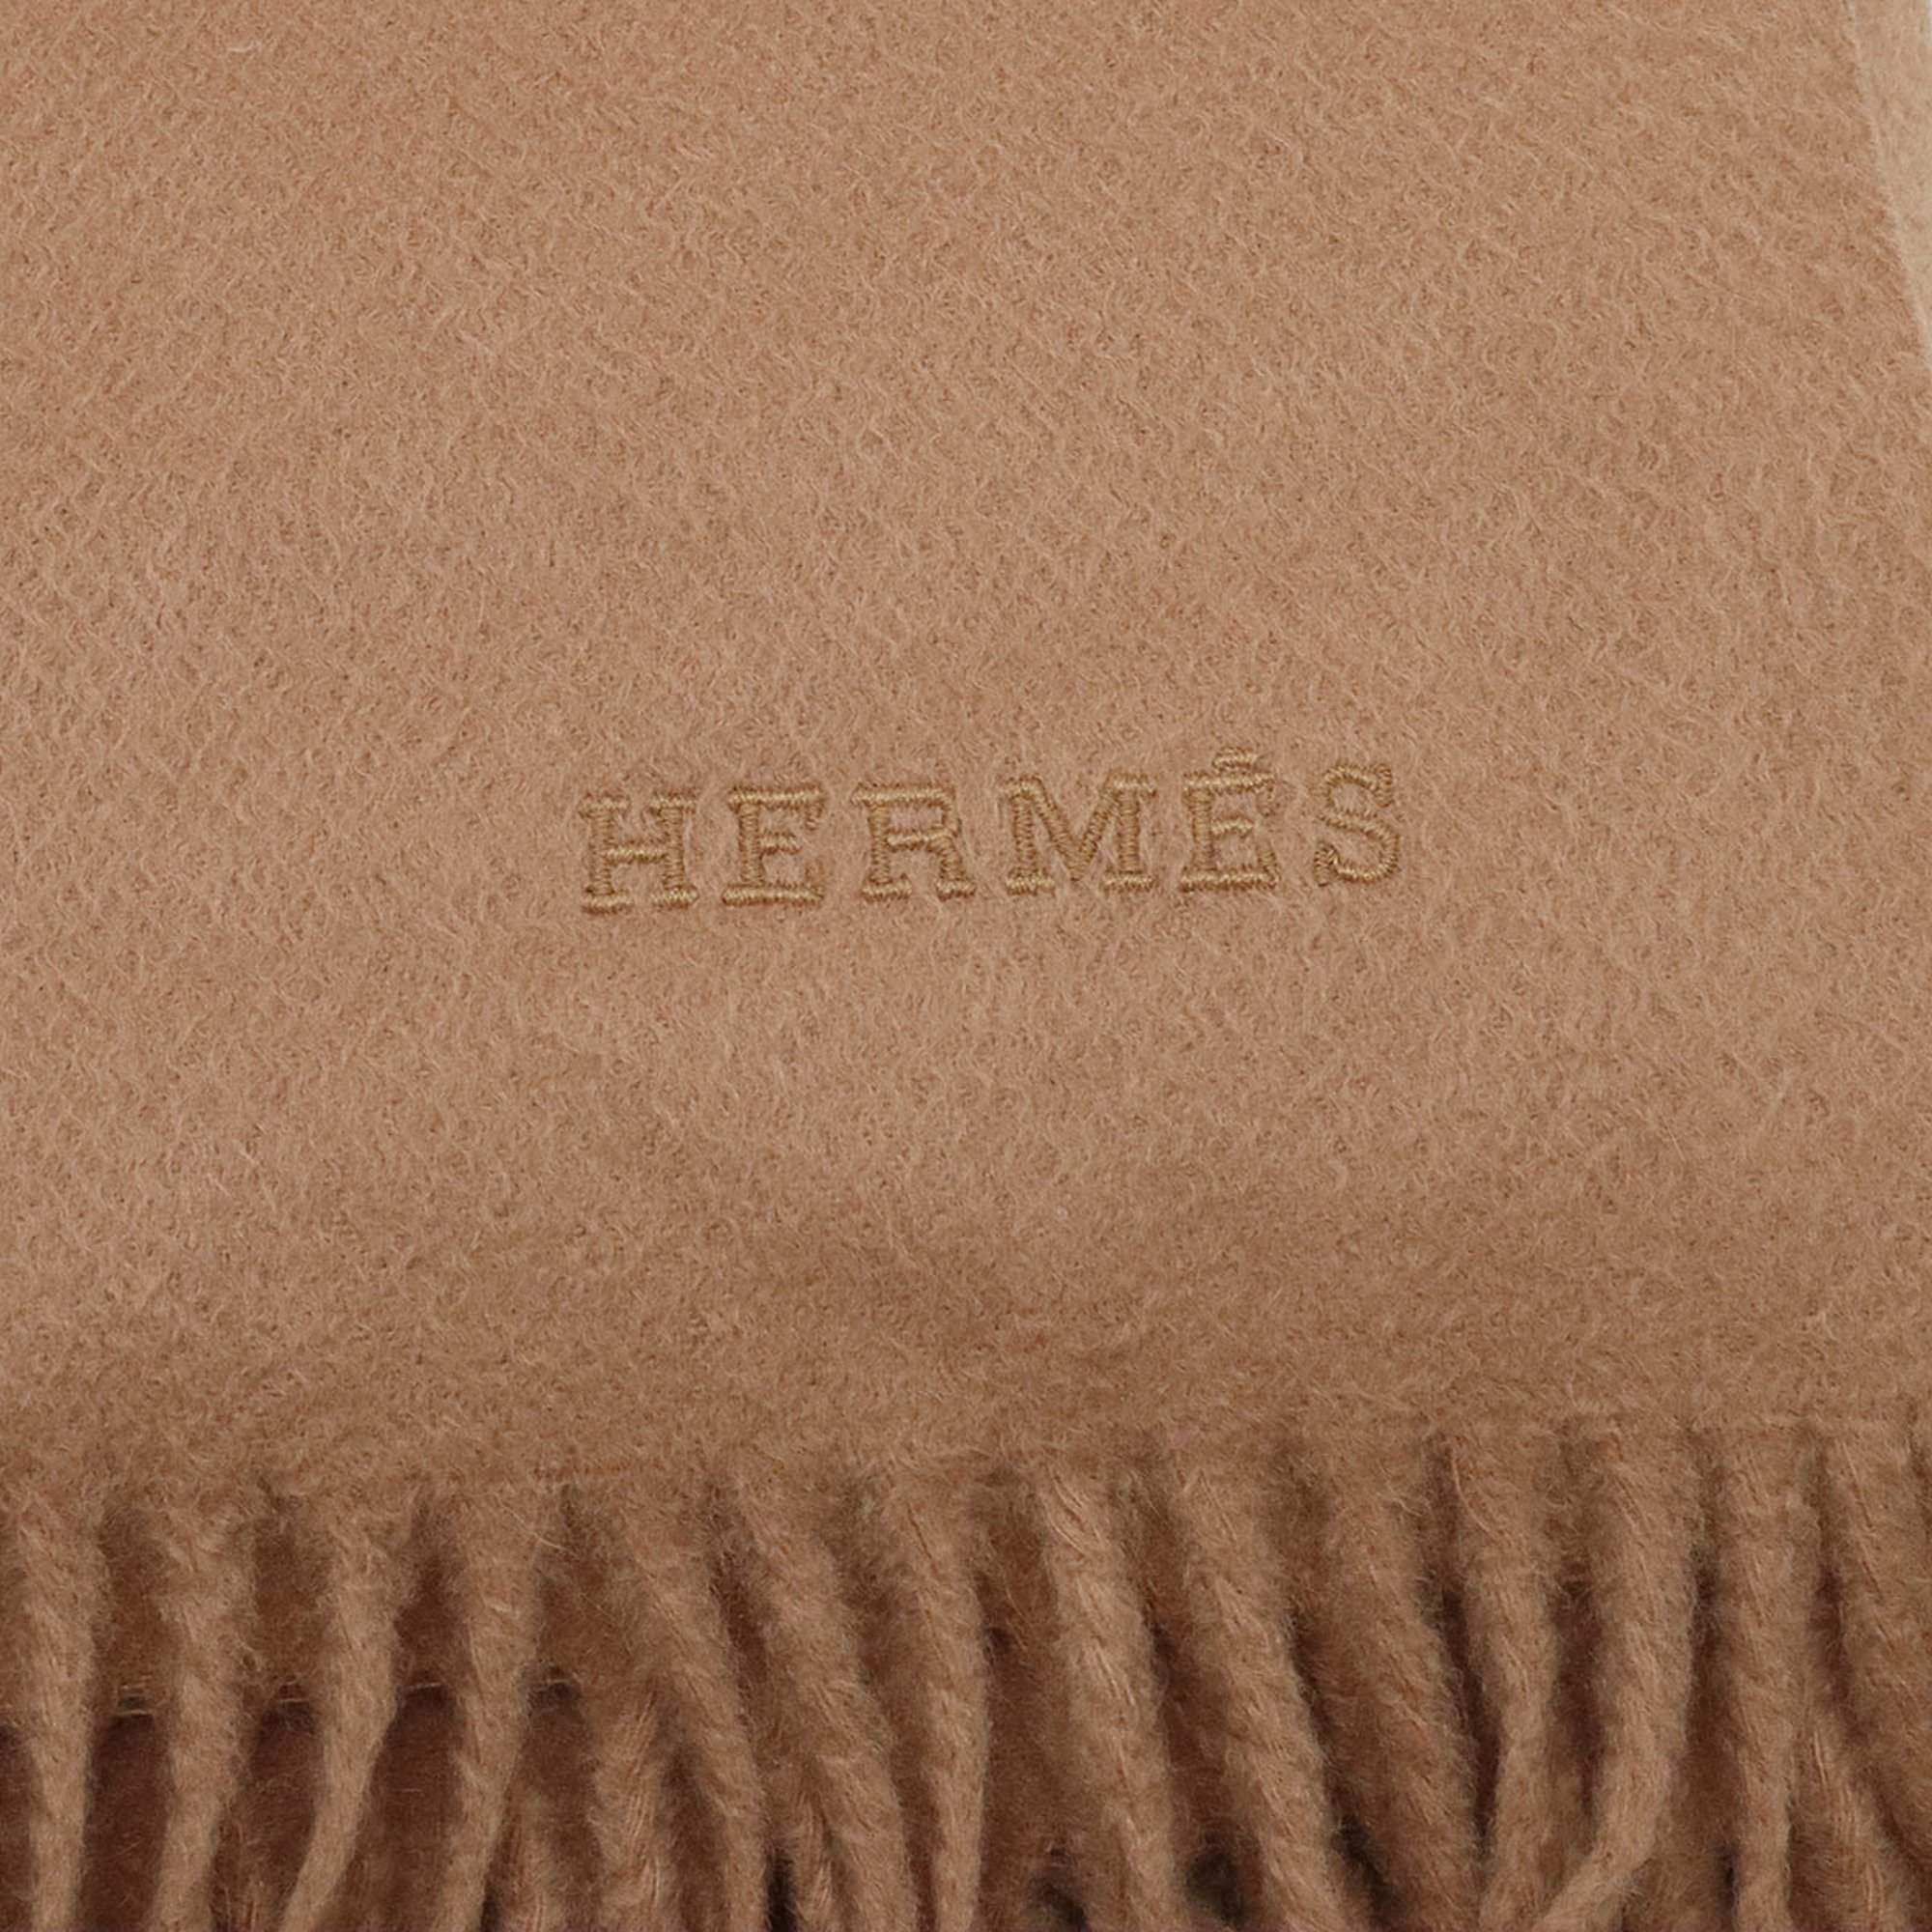 HERMES Hermes Large Stole, Knee Blanket, Embroidered, 100% Cashmere, Camel, Brown